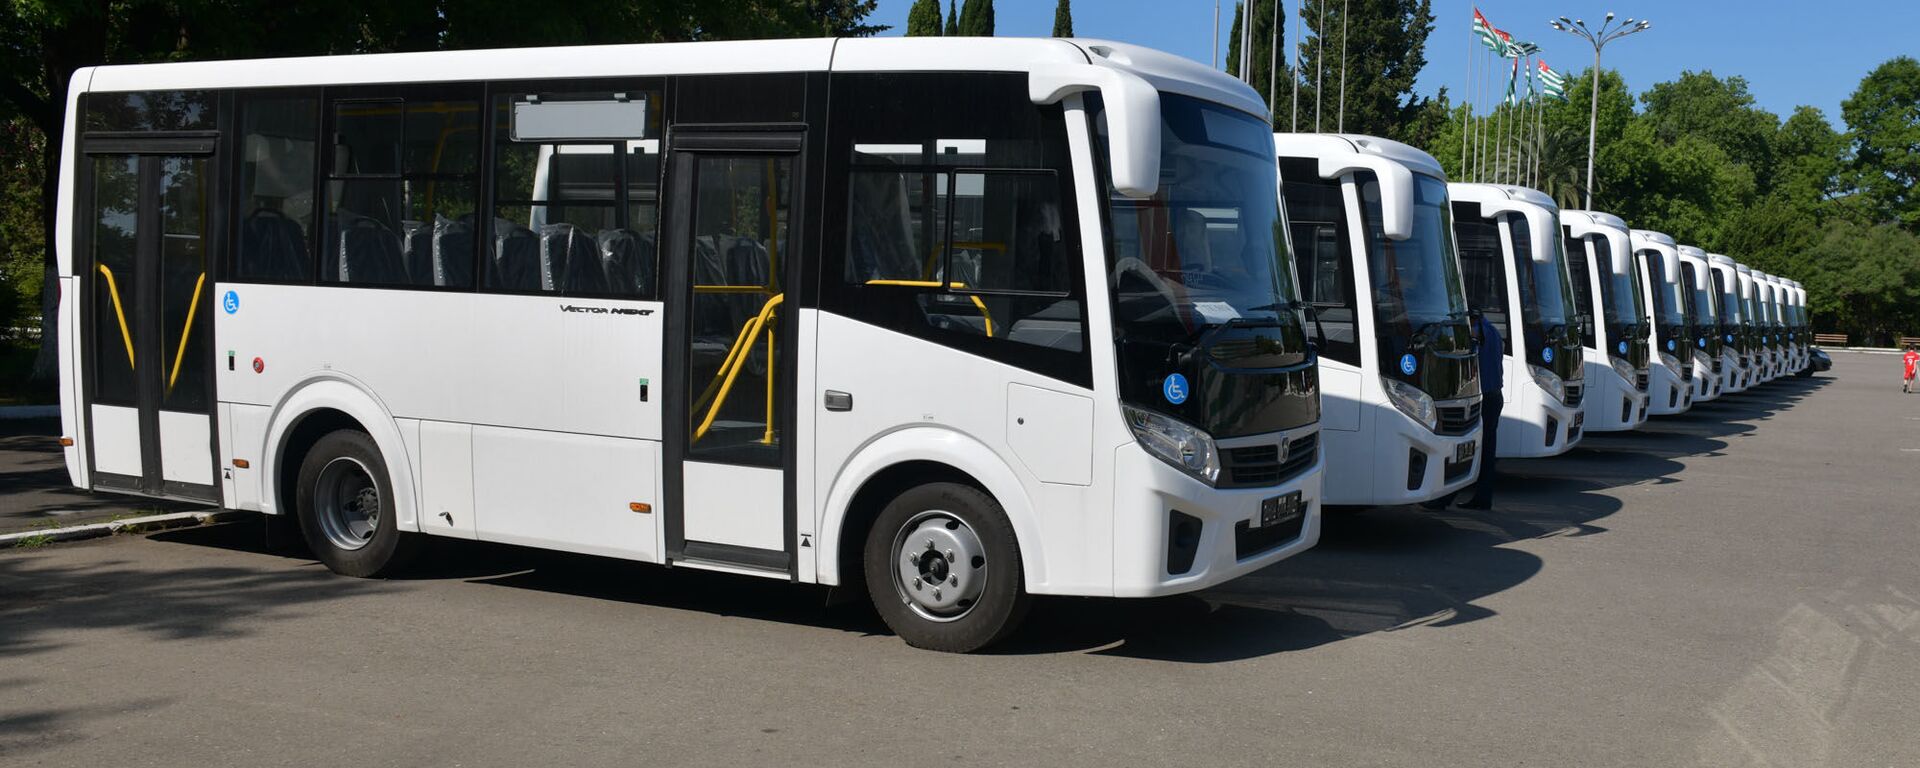 Новые автобусы, переданные районам Абхазии, 18 июня 2019 - Sputnik Абхазия, 1920, 21.03.2022